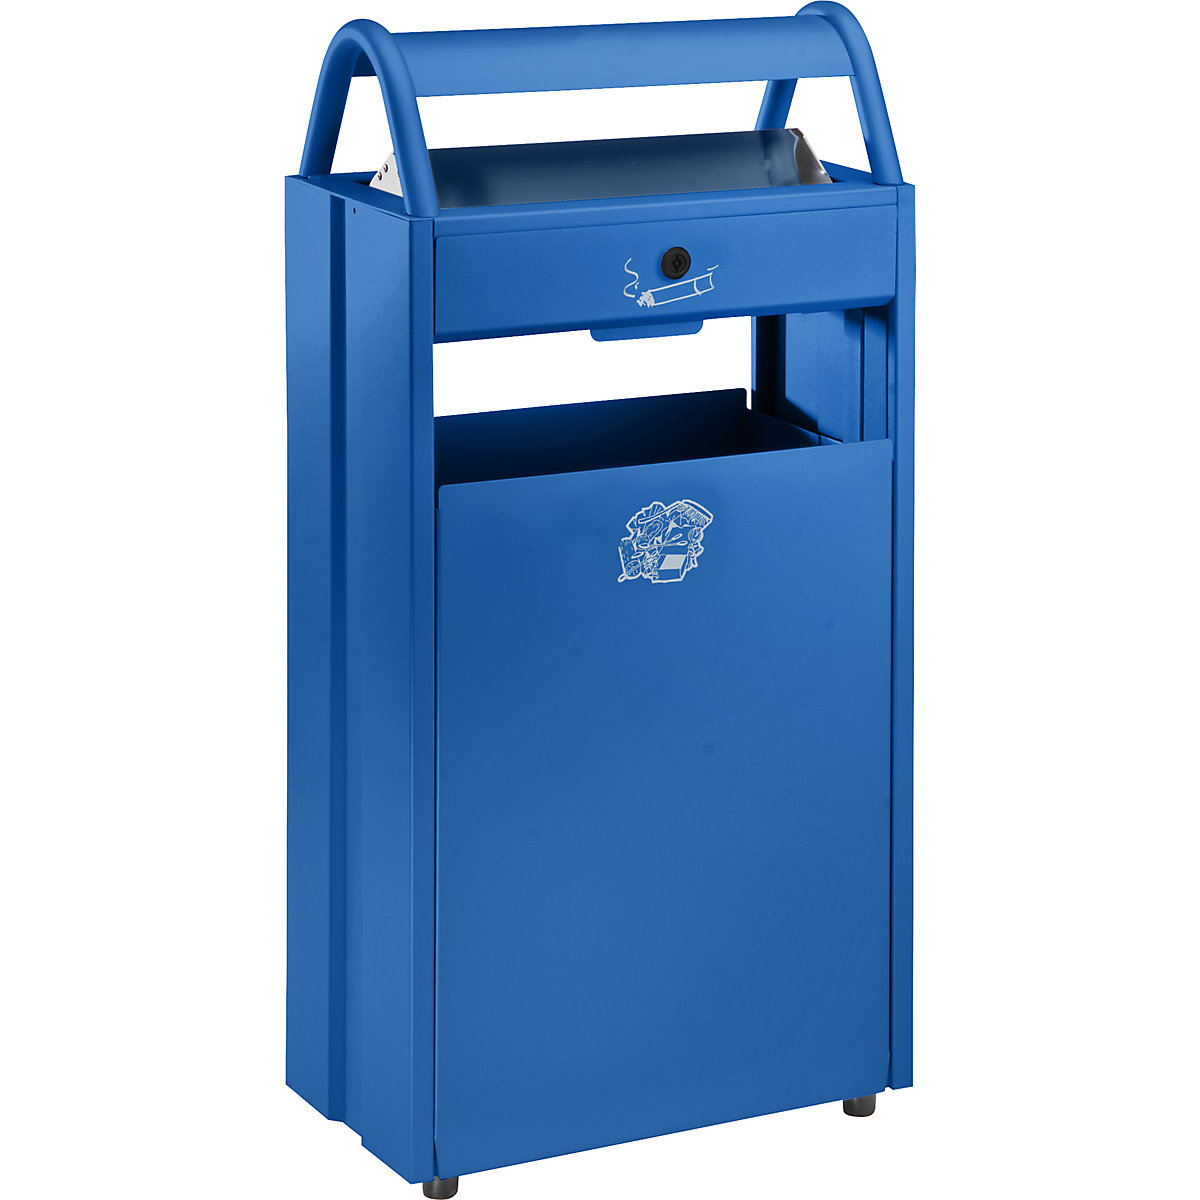 Colector de residuos con cenicero y tejadillo protector contra la lluvia – VAR, capacidad 60 l, A x H x P 480 x 960 x 250 mm, azul genciana RAL 5010